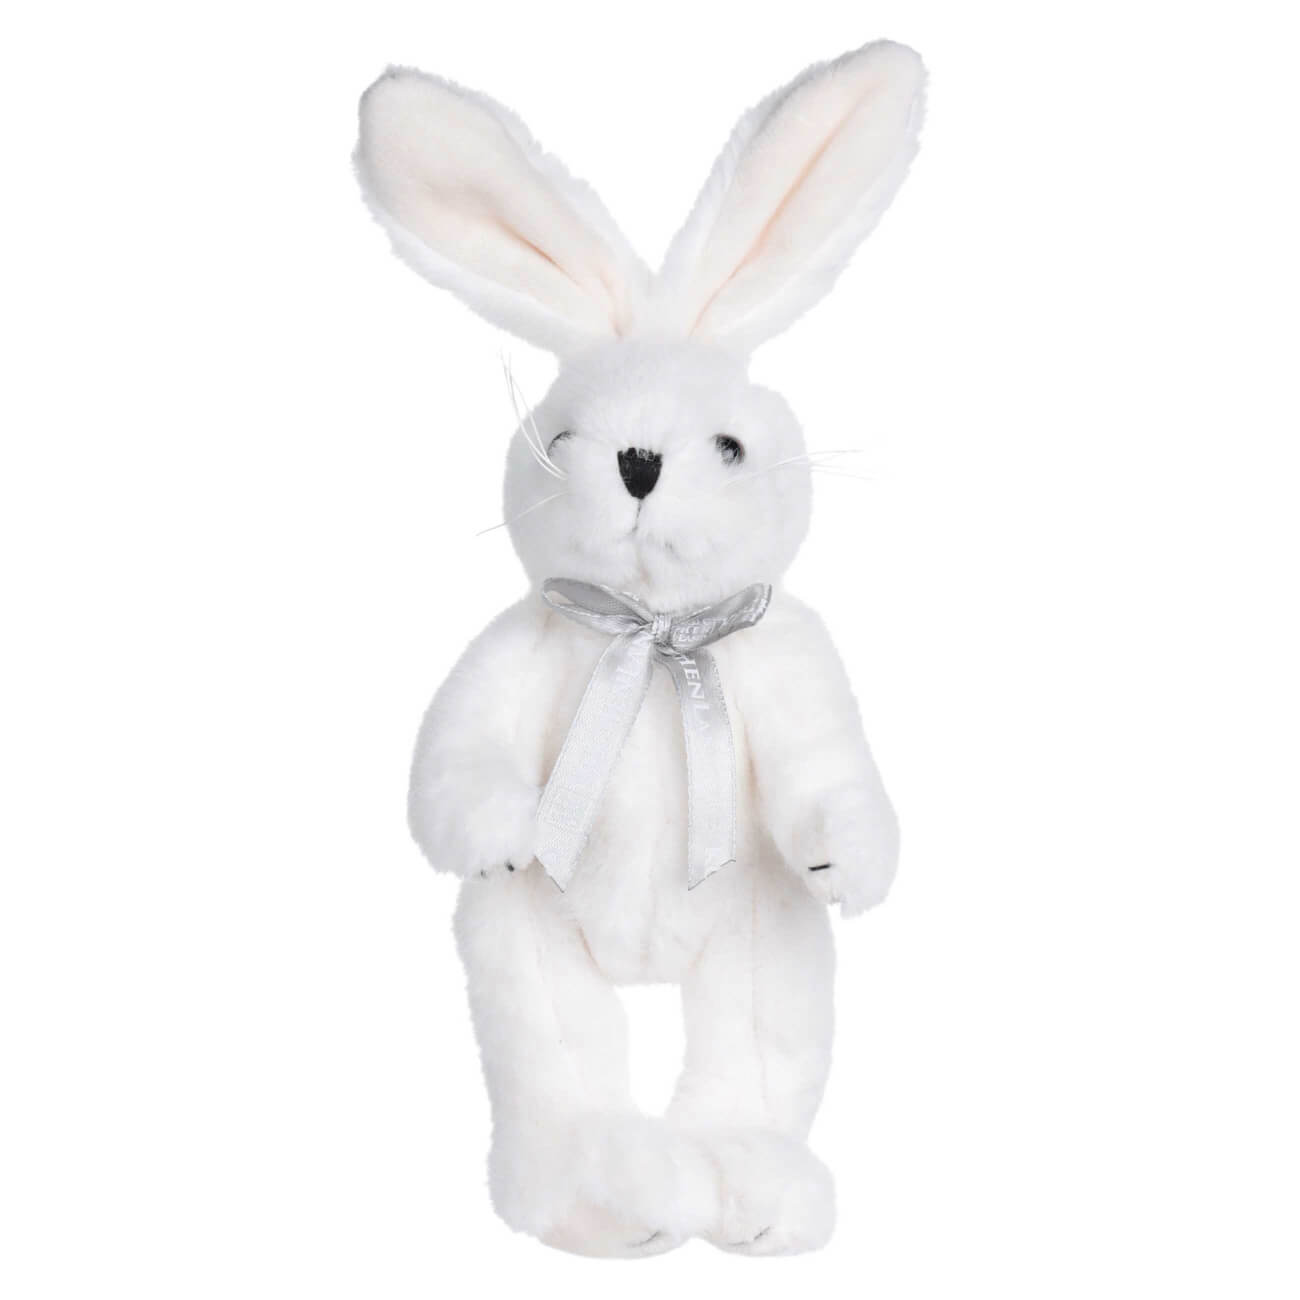 Игрушка, 20 см, мягкая, с подвижными лапами, полиэстер, белая, Кролик, Rabbit toy